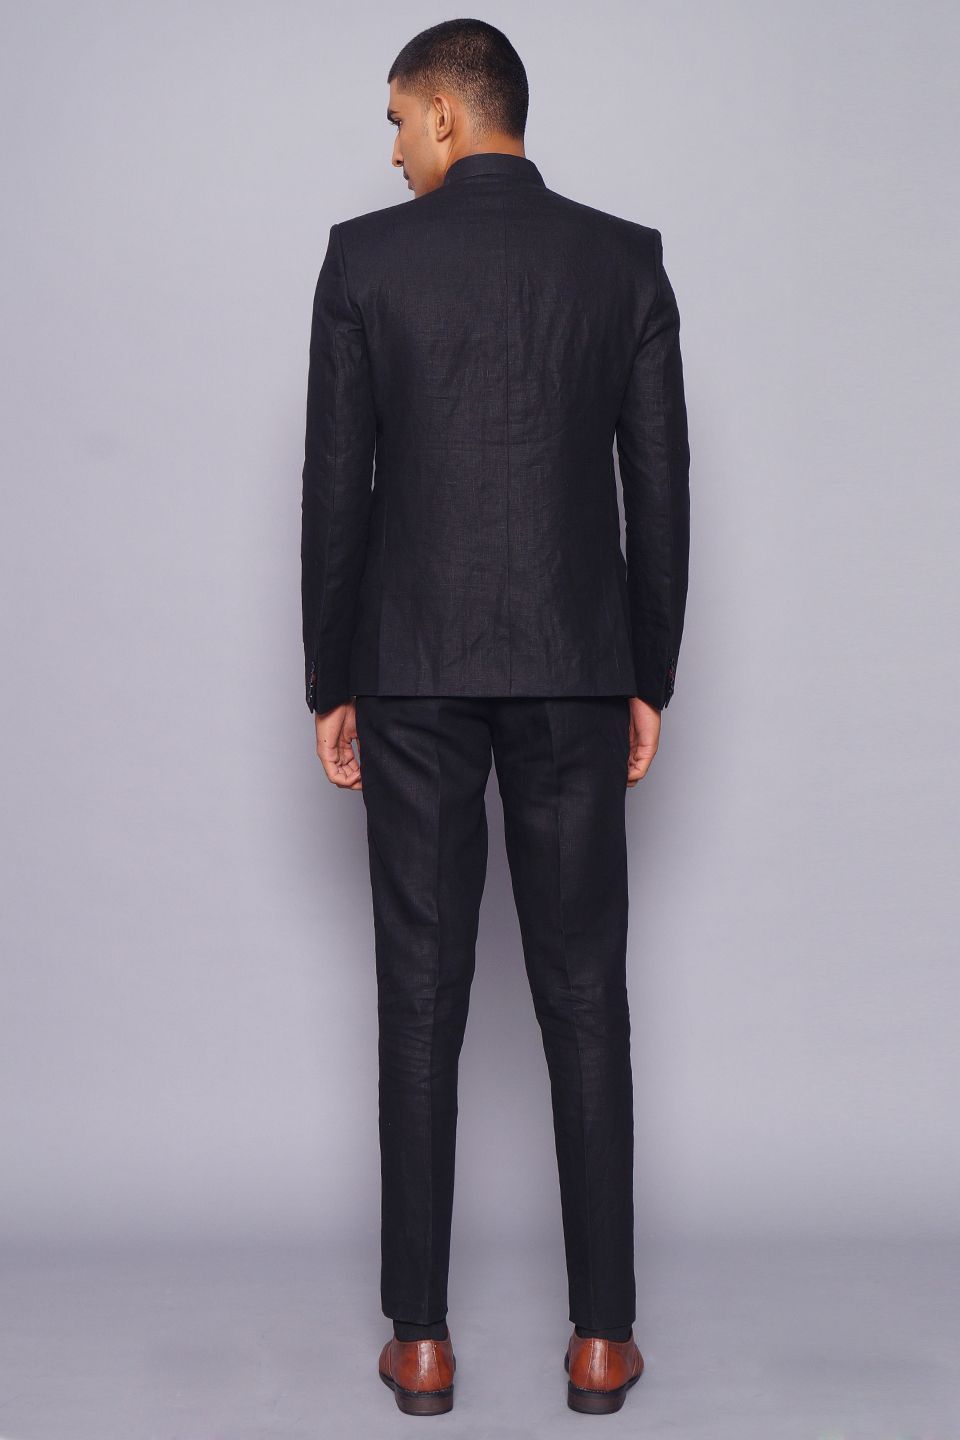 Black Colour Imported Fabric Party Wear Men Suit.